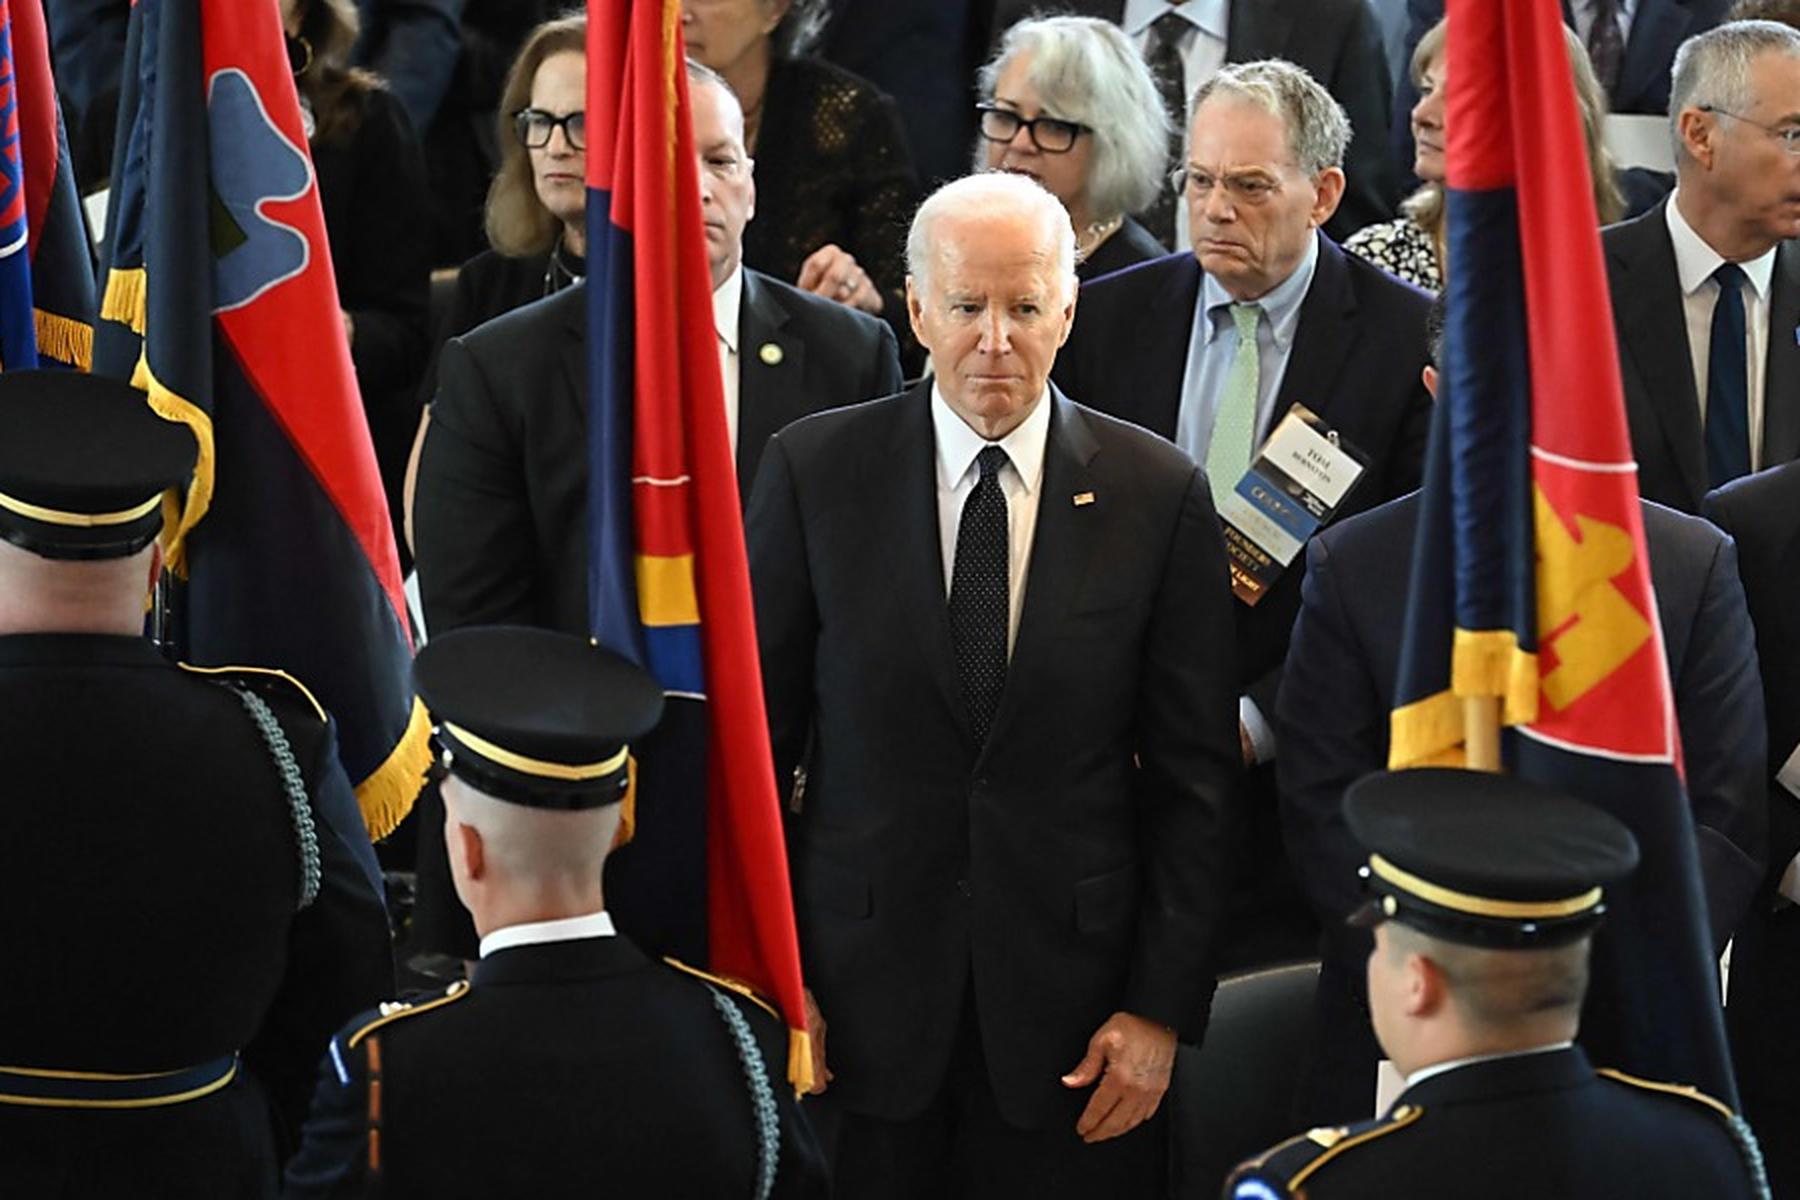 Washington: Biden warnt vor Antisemitismus an US-Hochschulen